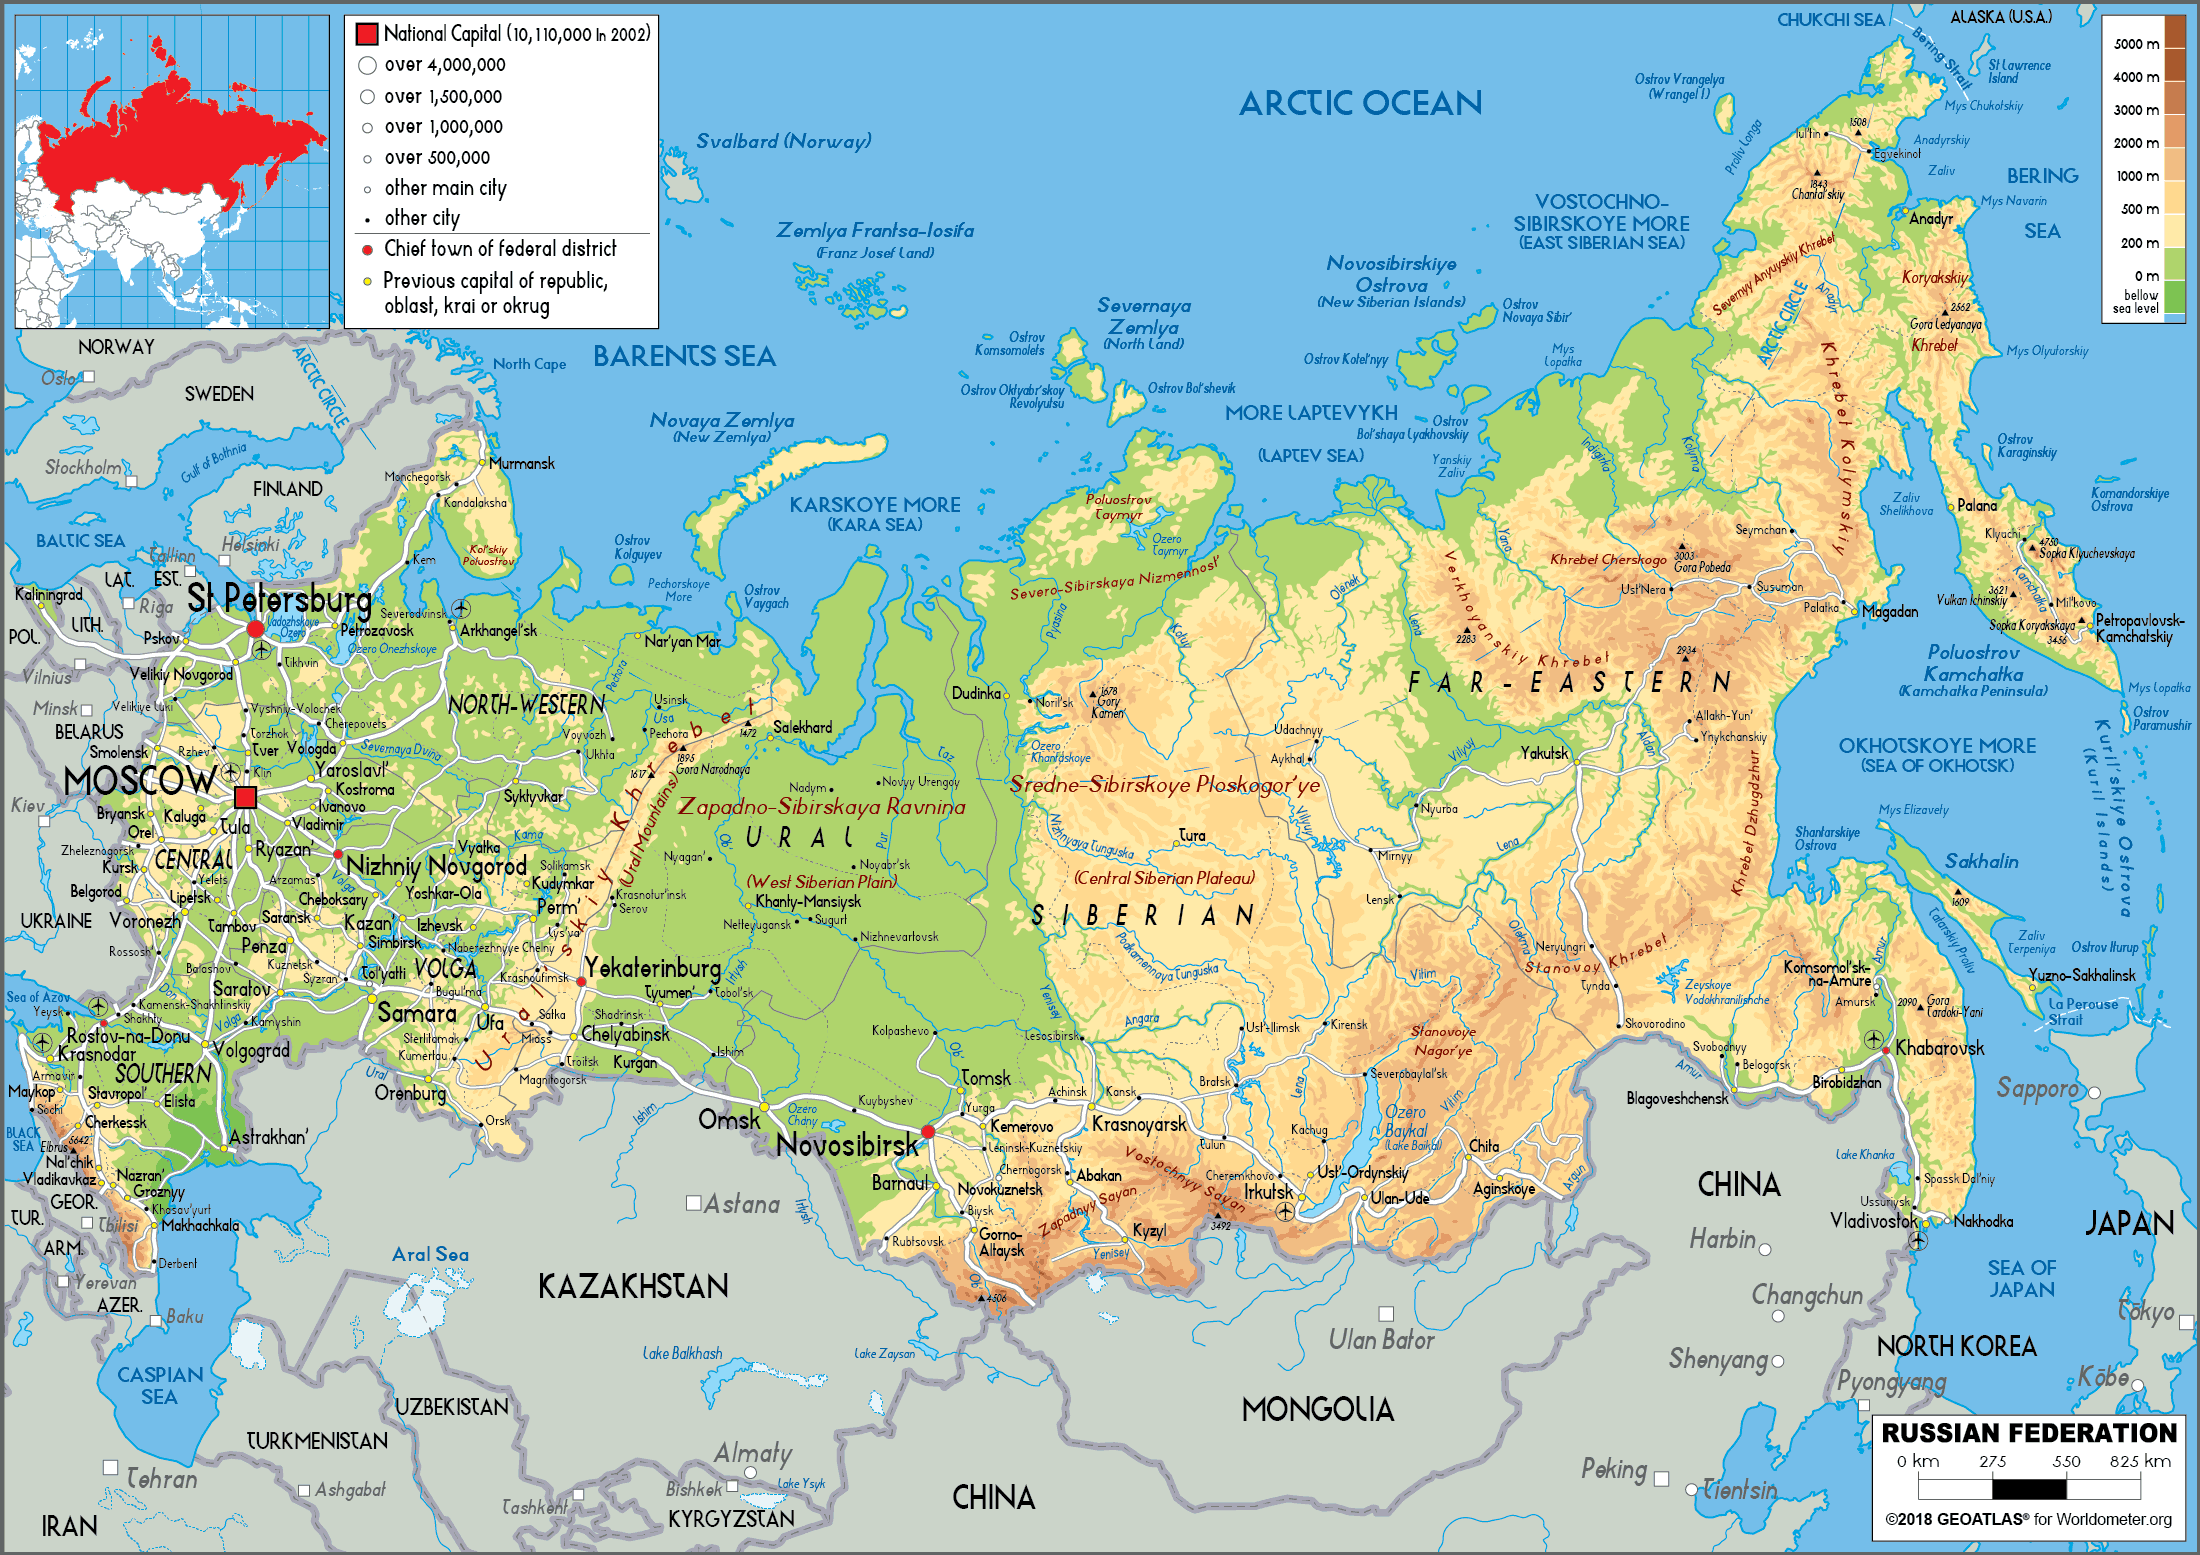 Tải bản đồ nước Nga khổ lớn 2024:
Bác sĩ, nhà khoa học hay sinh viên sẽ cảm thấy hứng thú khi tải bản đồ nước Nga khổ lớn trong năm 2024 này trên máy tính hay điện thoại. Với độ phân giải cao, bản đồ này giúp người dùng định vị và khám phá các địa danh độc đáo của xứ sở Bạch Dương, từ Vịnh Baikal đến Bán đảo Kamchatka.